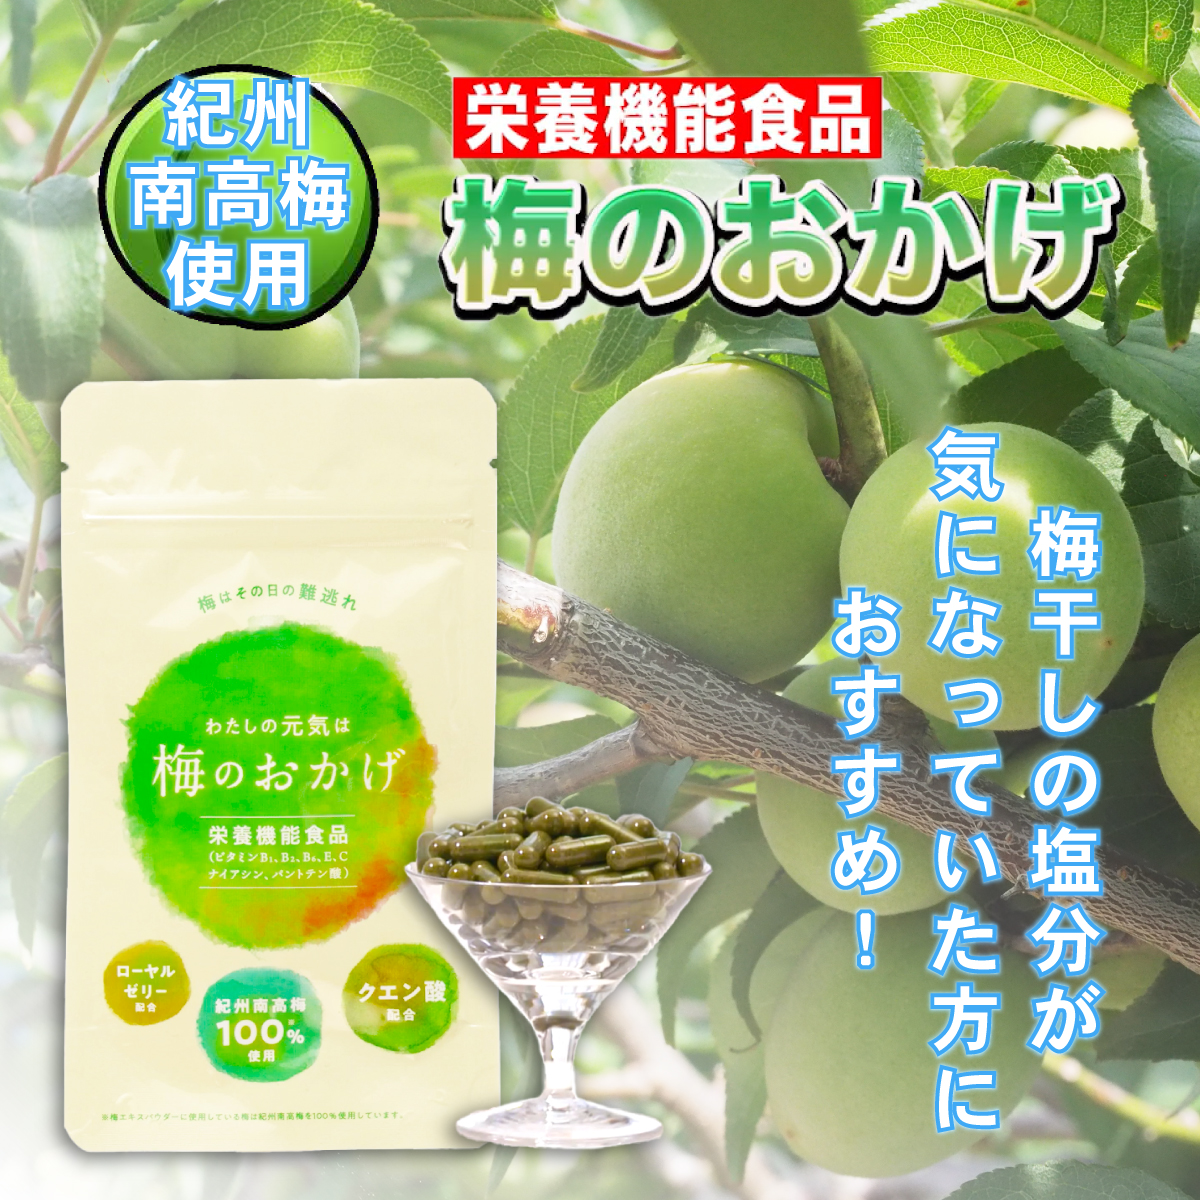 【セール】梅のおかげ 60粒入り (約1か月分) 栄養機能食品 サプリメント (賞味期限2024年8月31日)